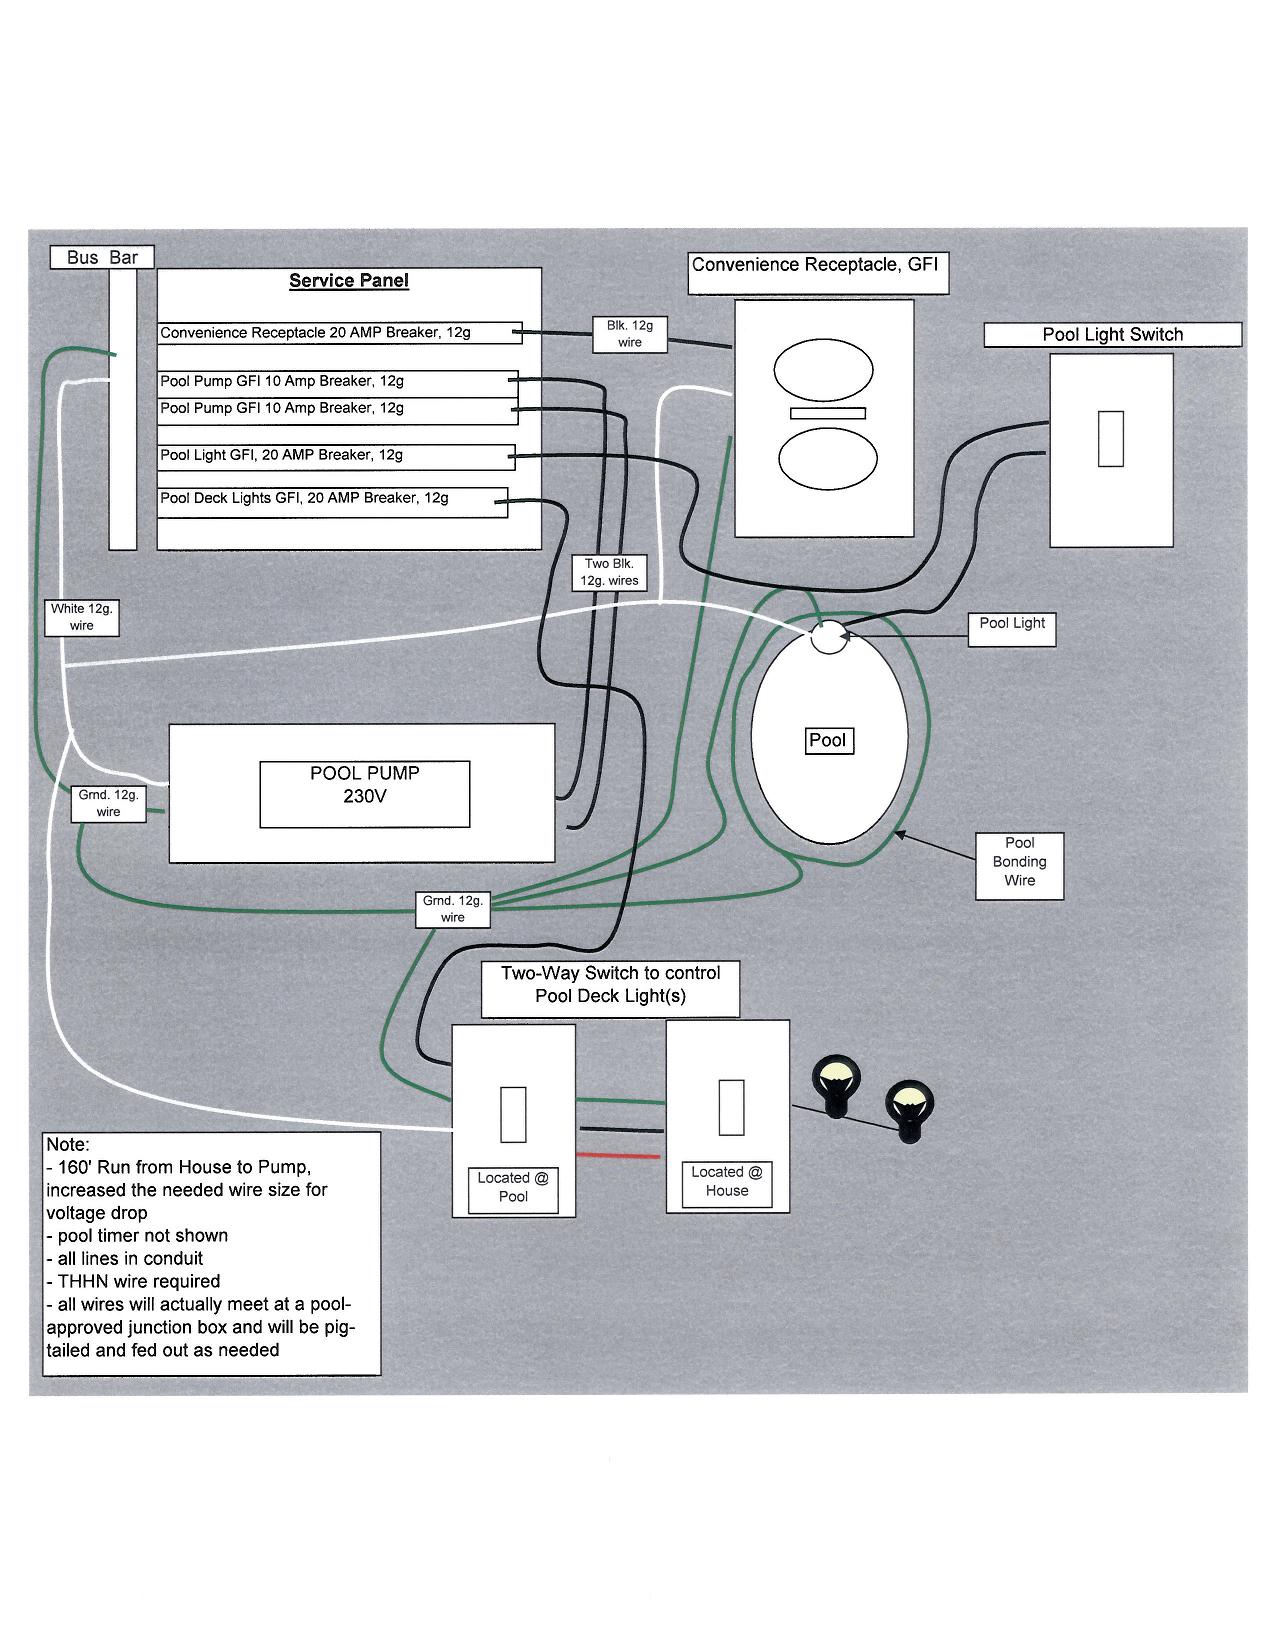 electrical diagram.JPG